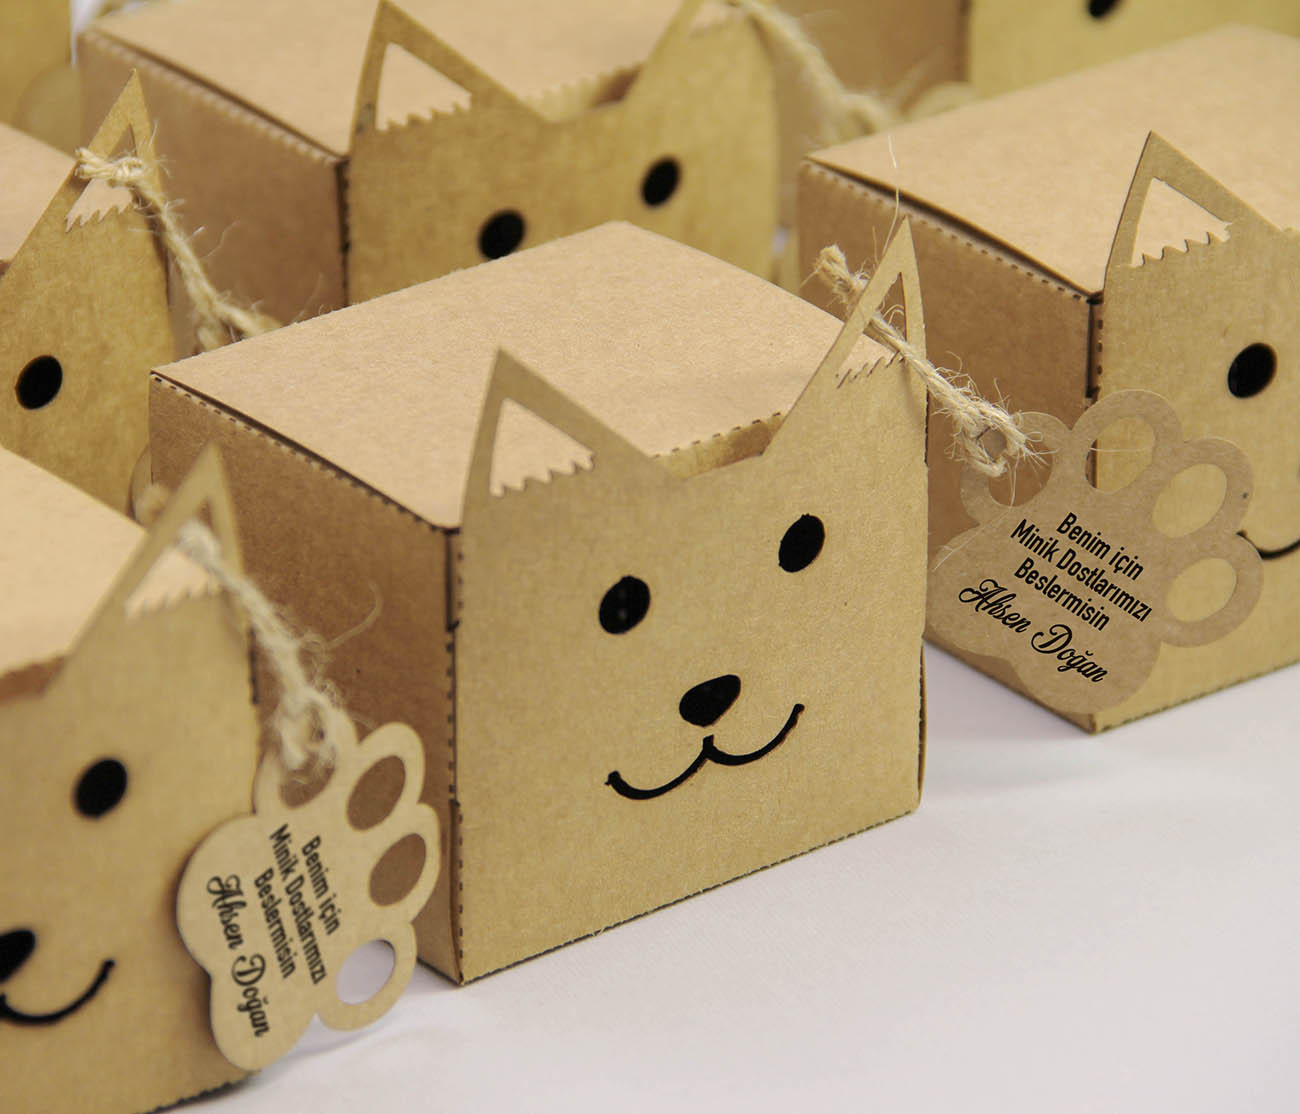 Kedi Şekilli Kraft Karton Kutu - Hediyelik Mama Kutusu